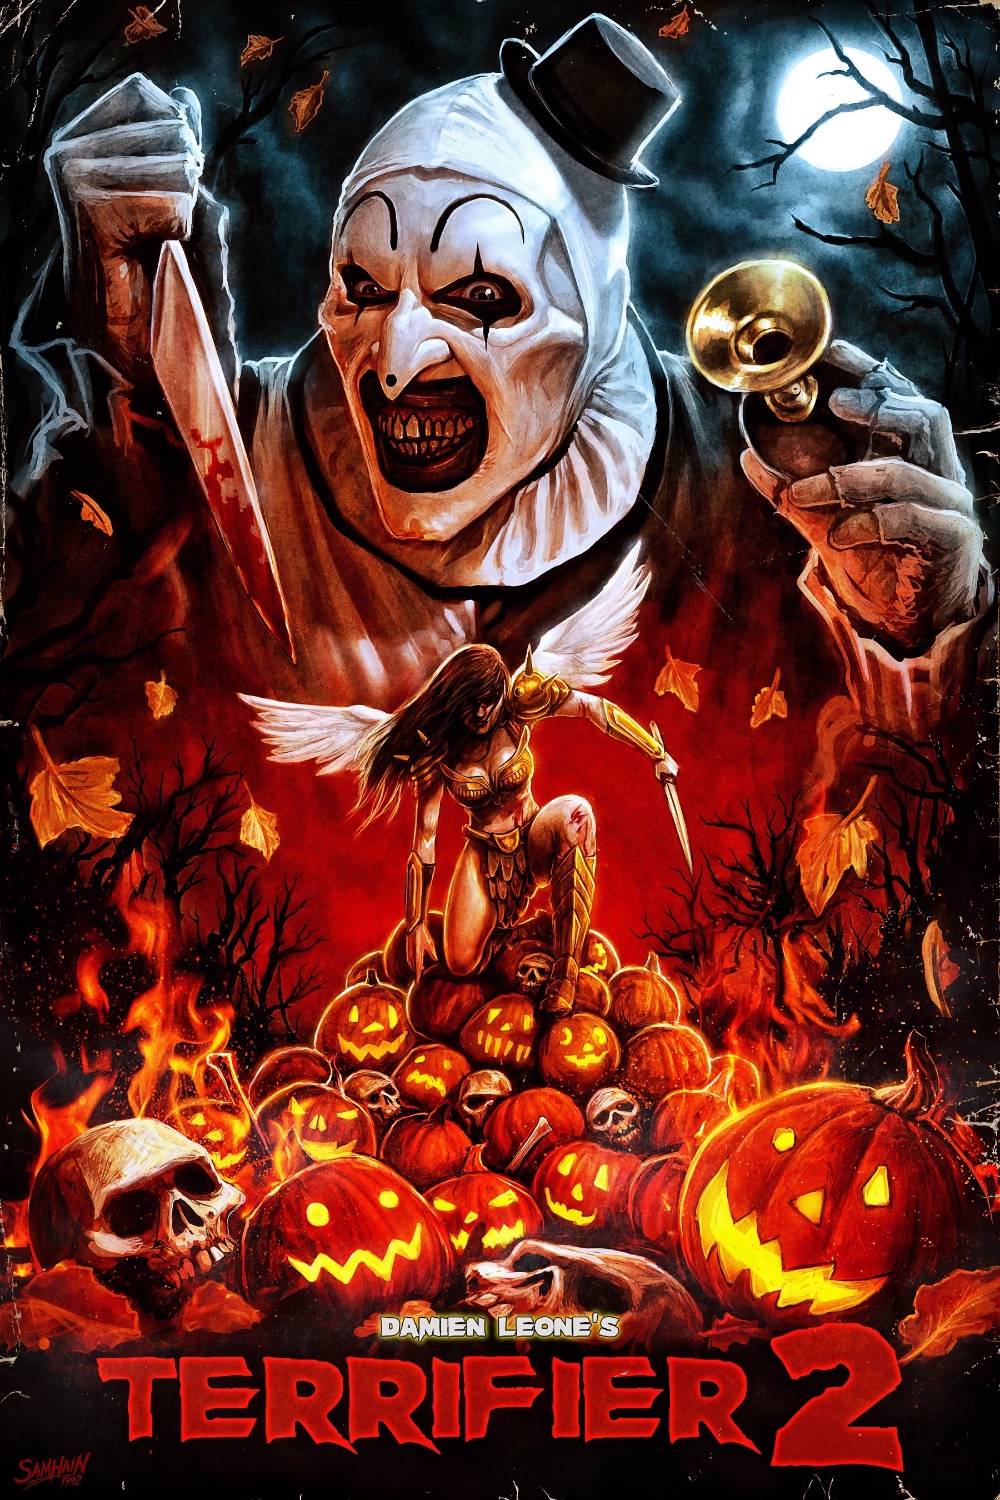 Halloween Filme 2023 Teil 2 #horrorfilme2023 #neuefilme #halloween2023